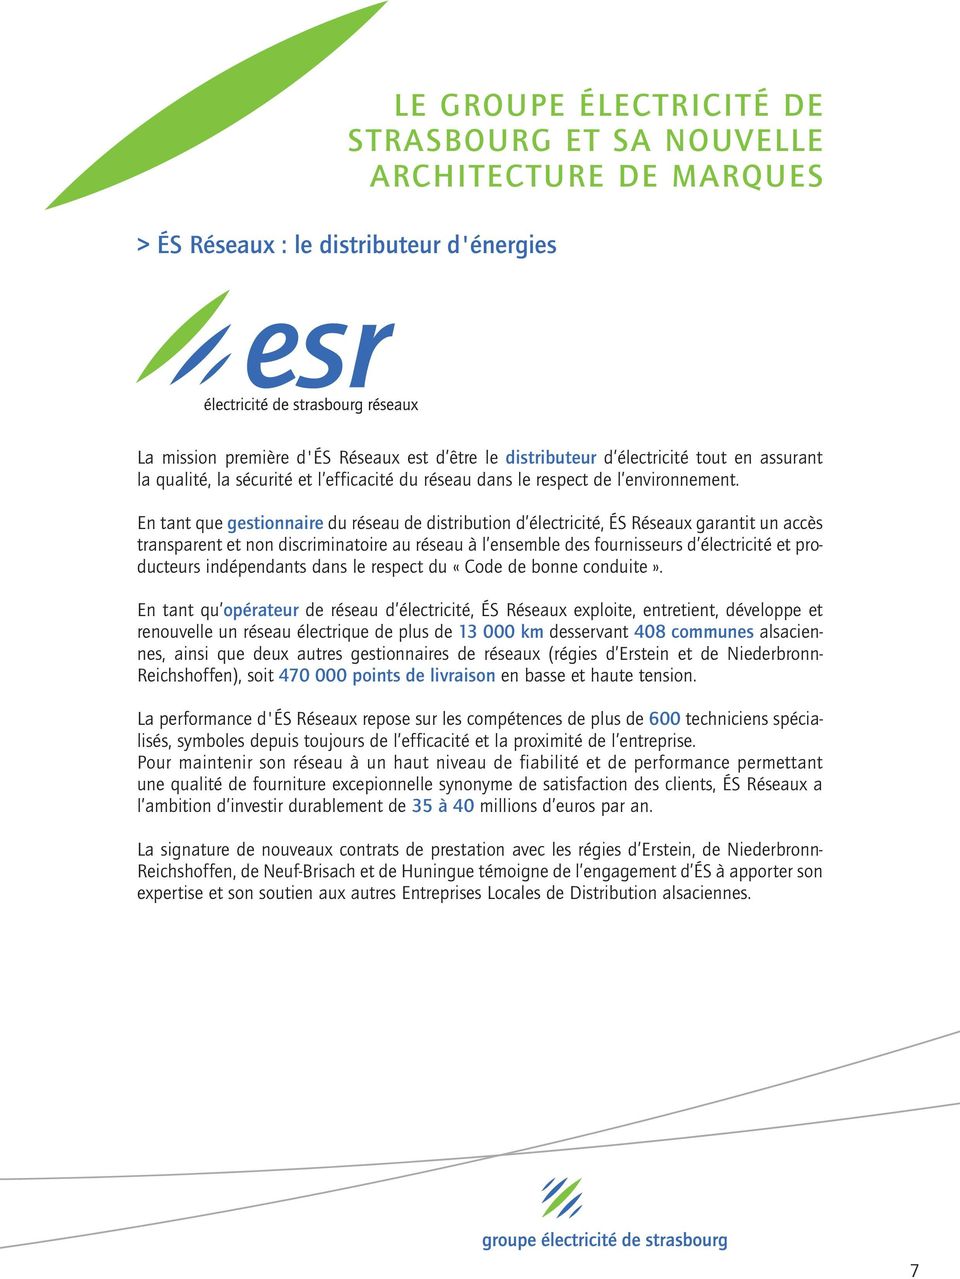 En tant que gestionnaire du réseau de distribution d électricité, ÉS Réseaux garantit un accès transparent et non discriminatoire au réseau à l ensemble des fournisseurs d électricité et producteurs